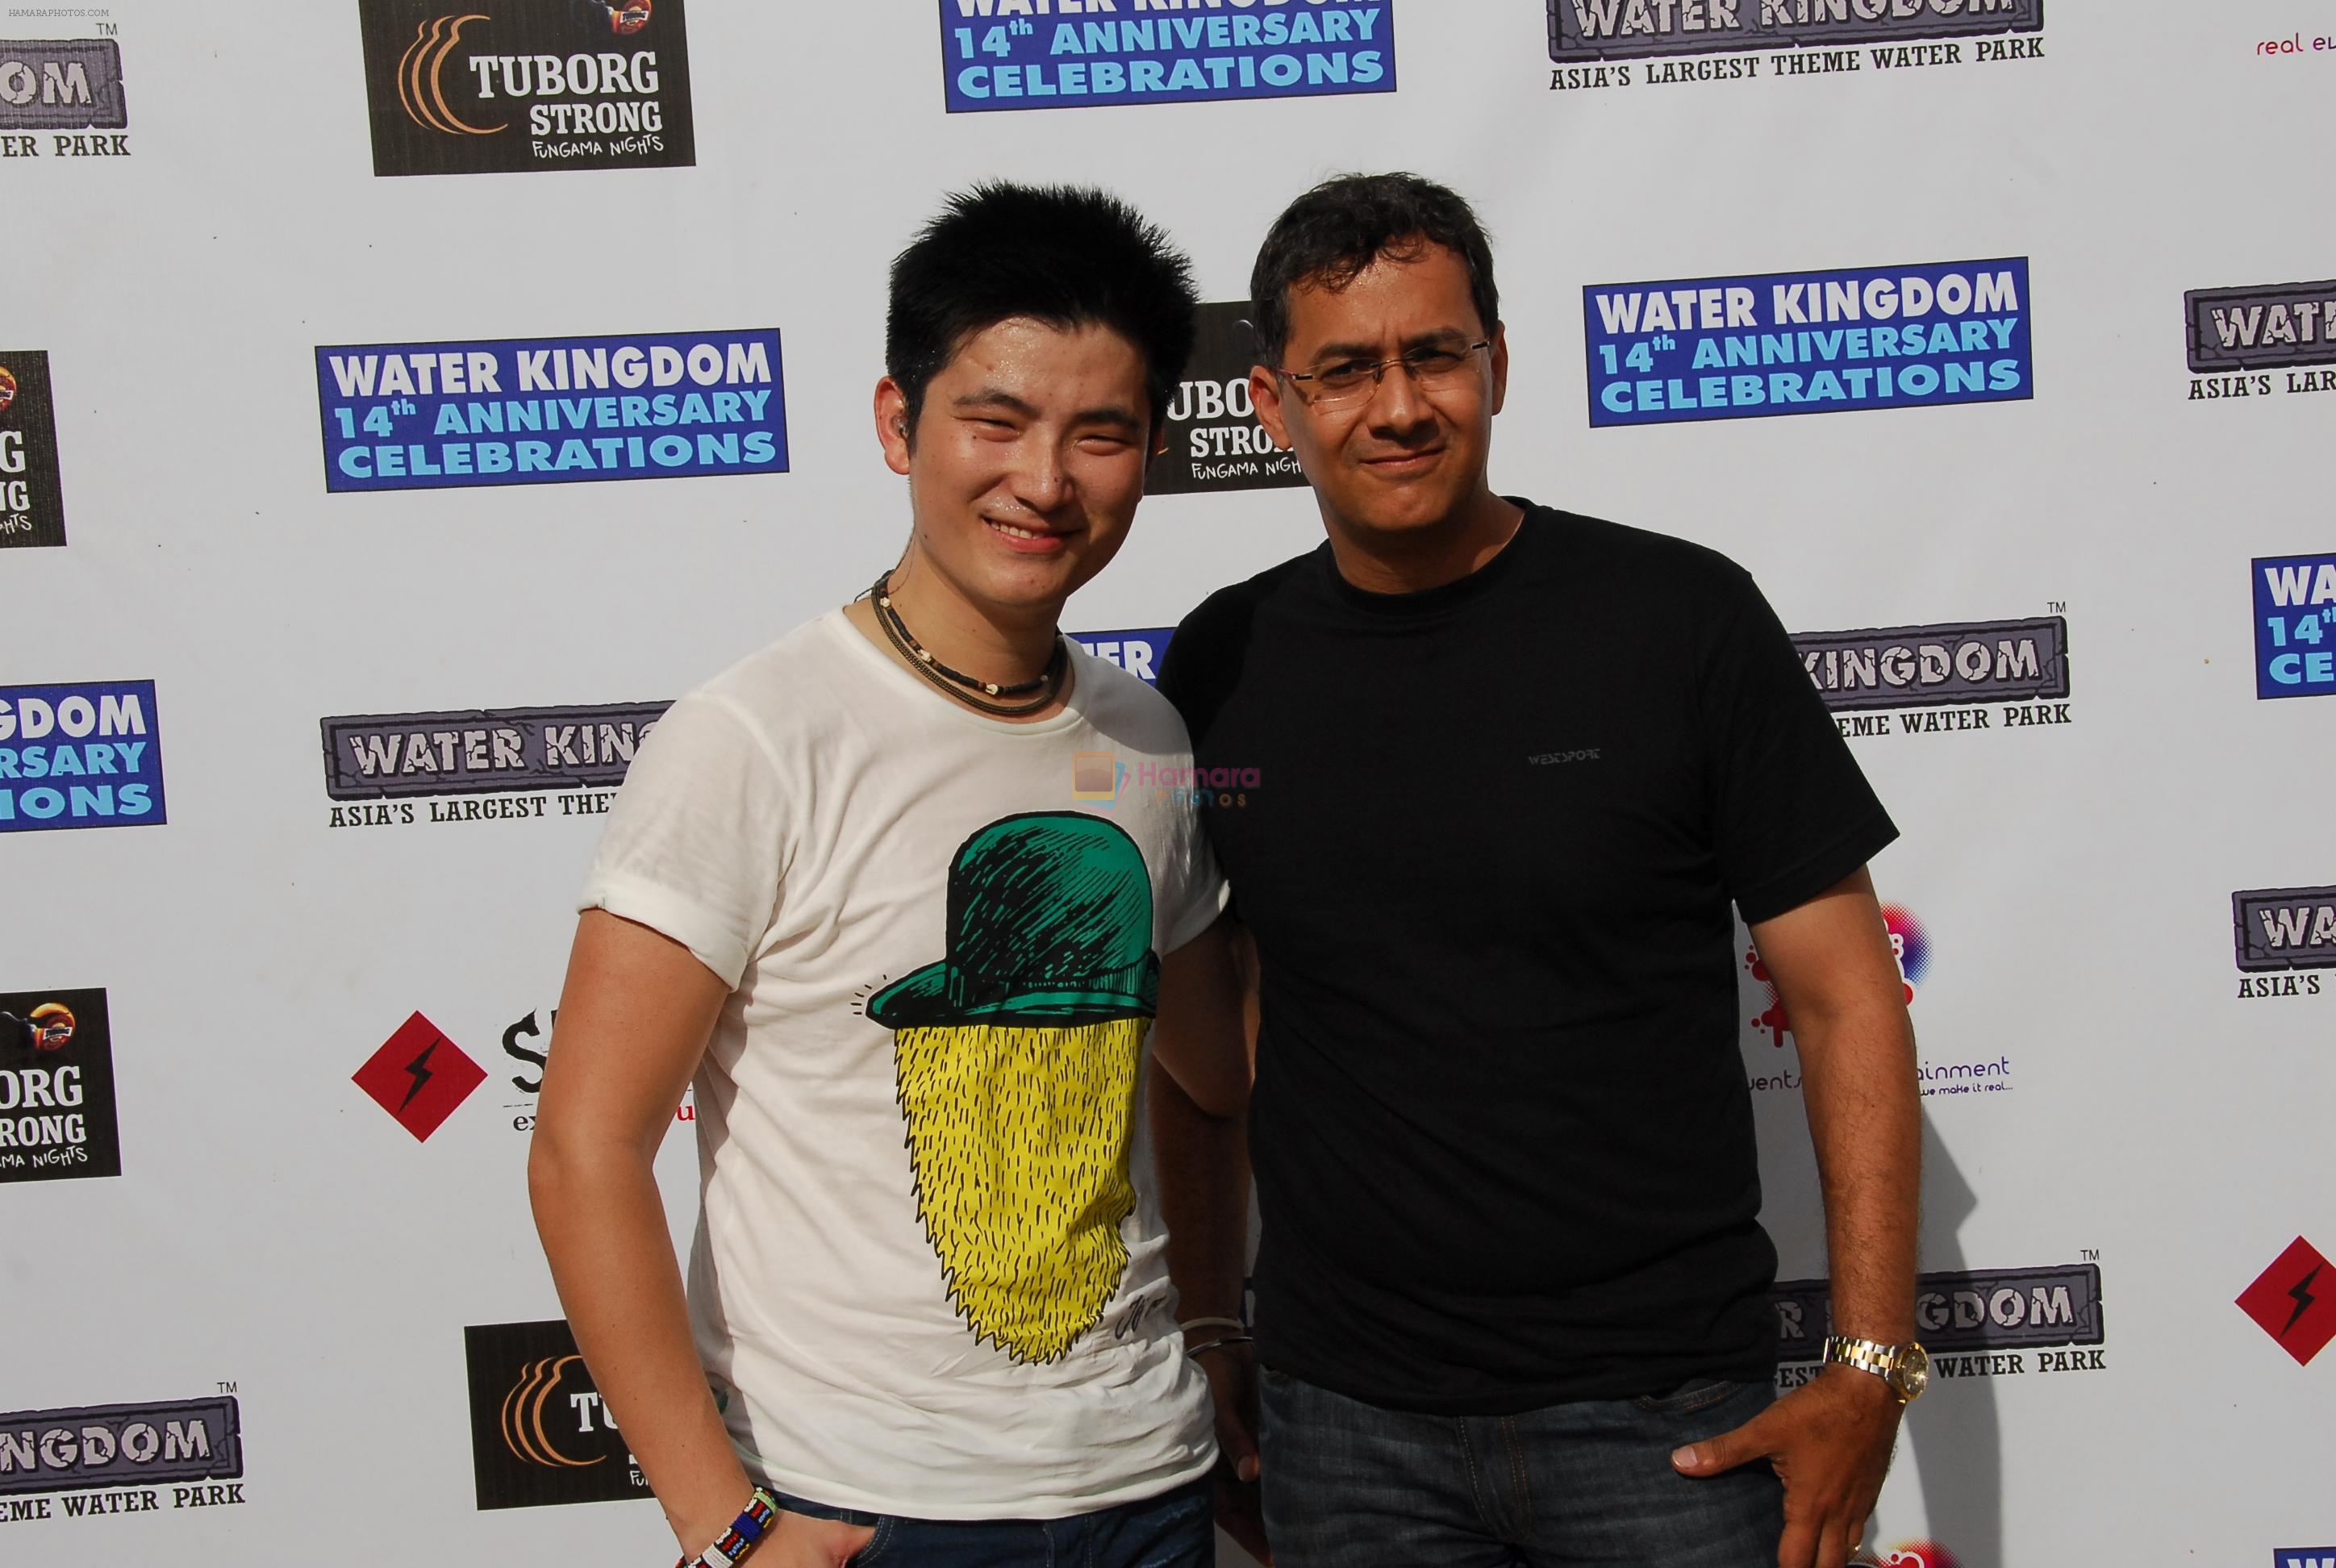 Meiyang Chang and Bhushan Motiani at the 14th anniversary at The Water Kingdom in Mumbai on 6th May 2012